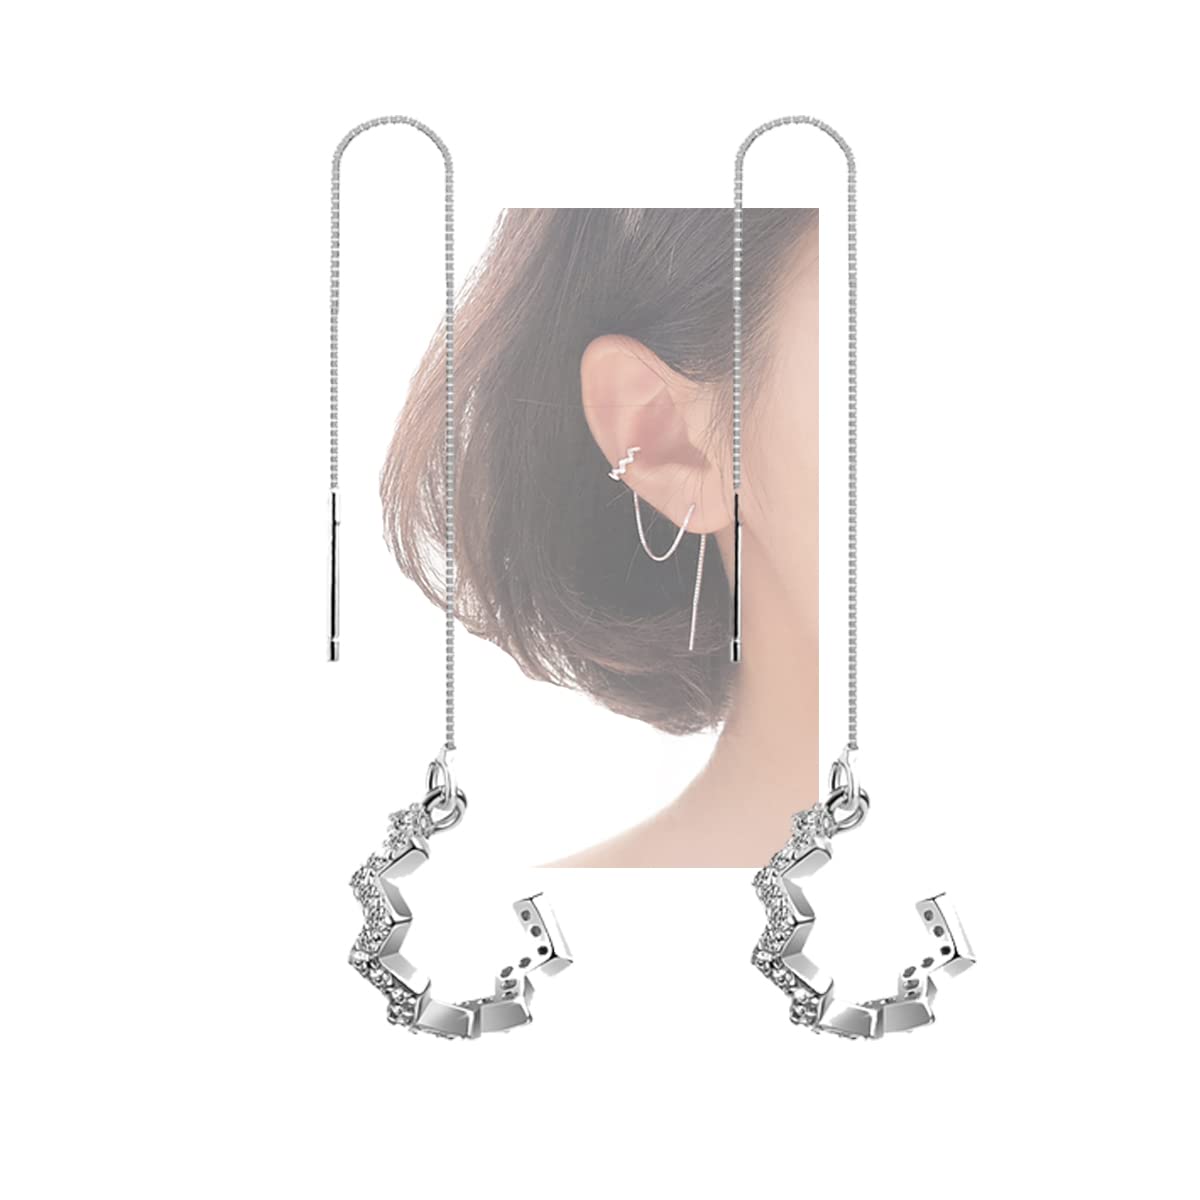 SLUYNZ 925 Sterling Silver Wave Cuff Earrings Wrap Tassel Earrings for Women Teen Girls Dangle Earrings Threader Chain